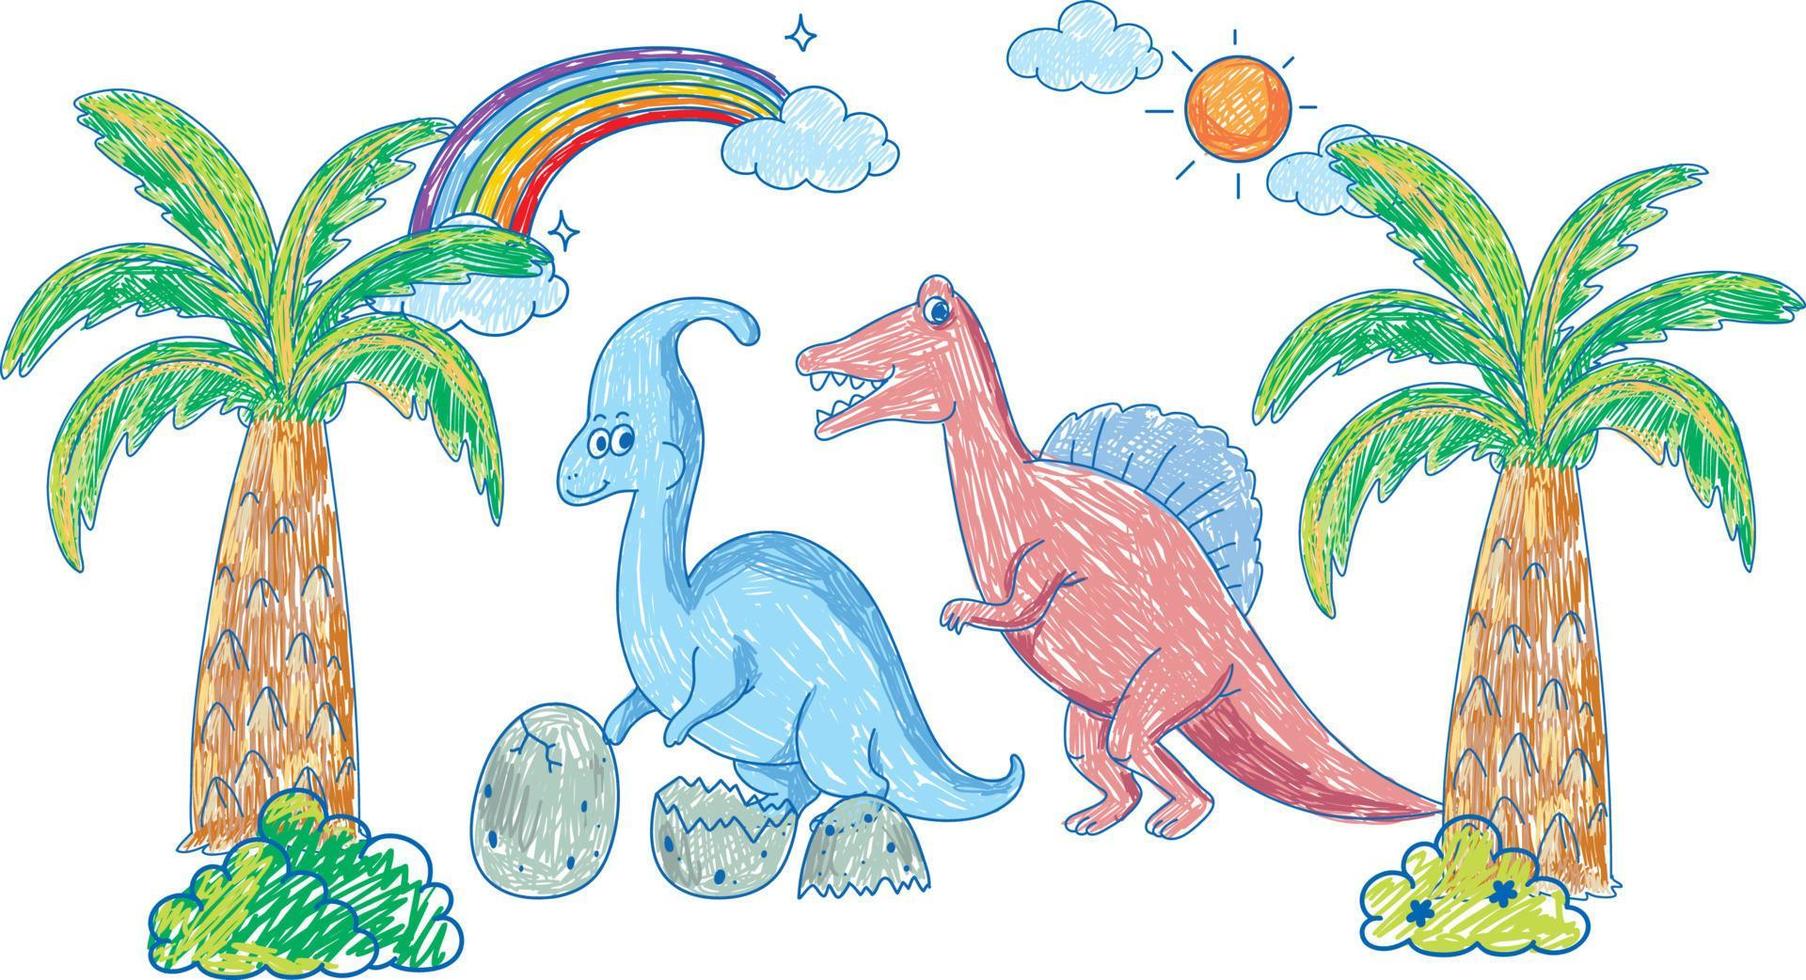 groupe de dinosaures colorés dessinés à la main vecteur